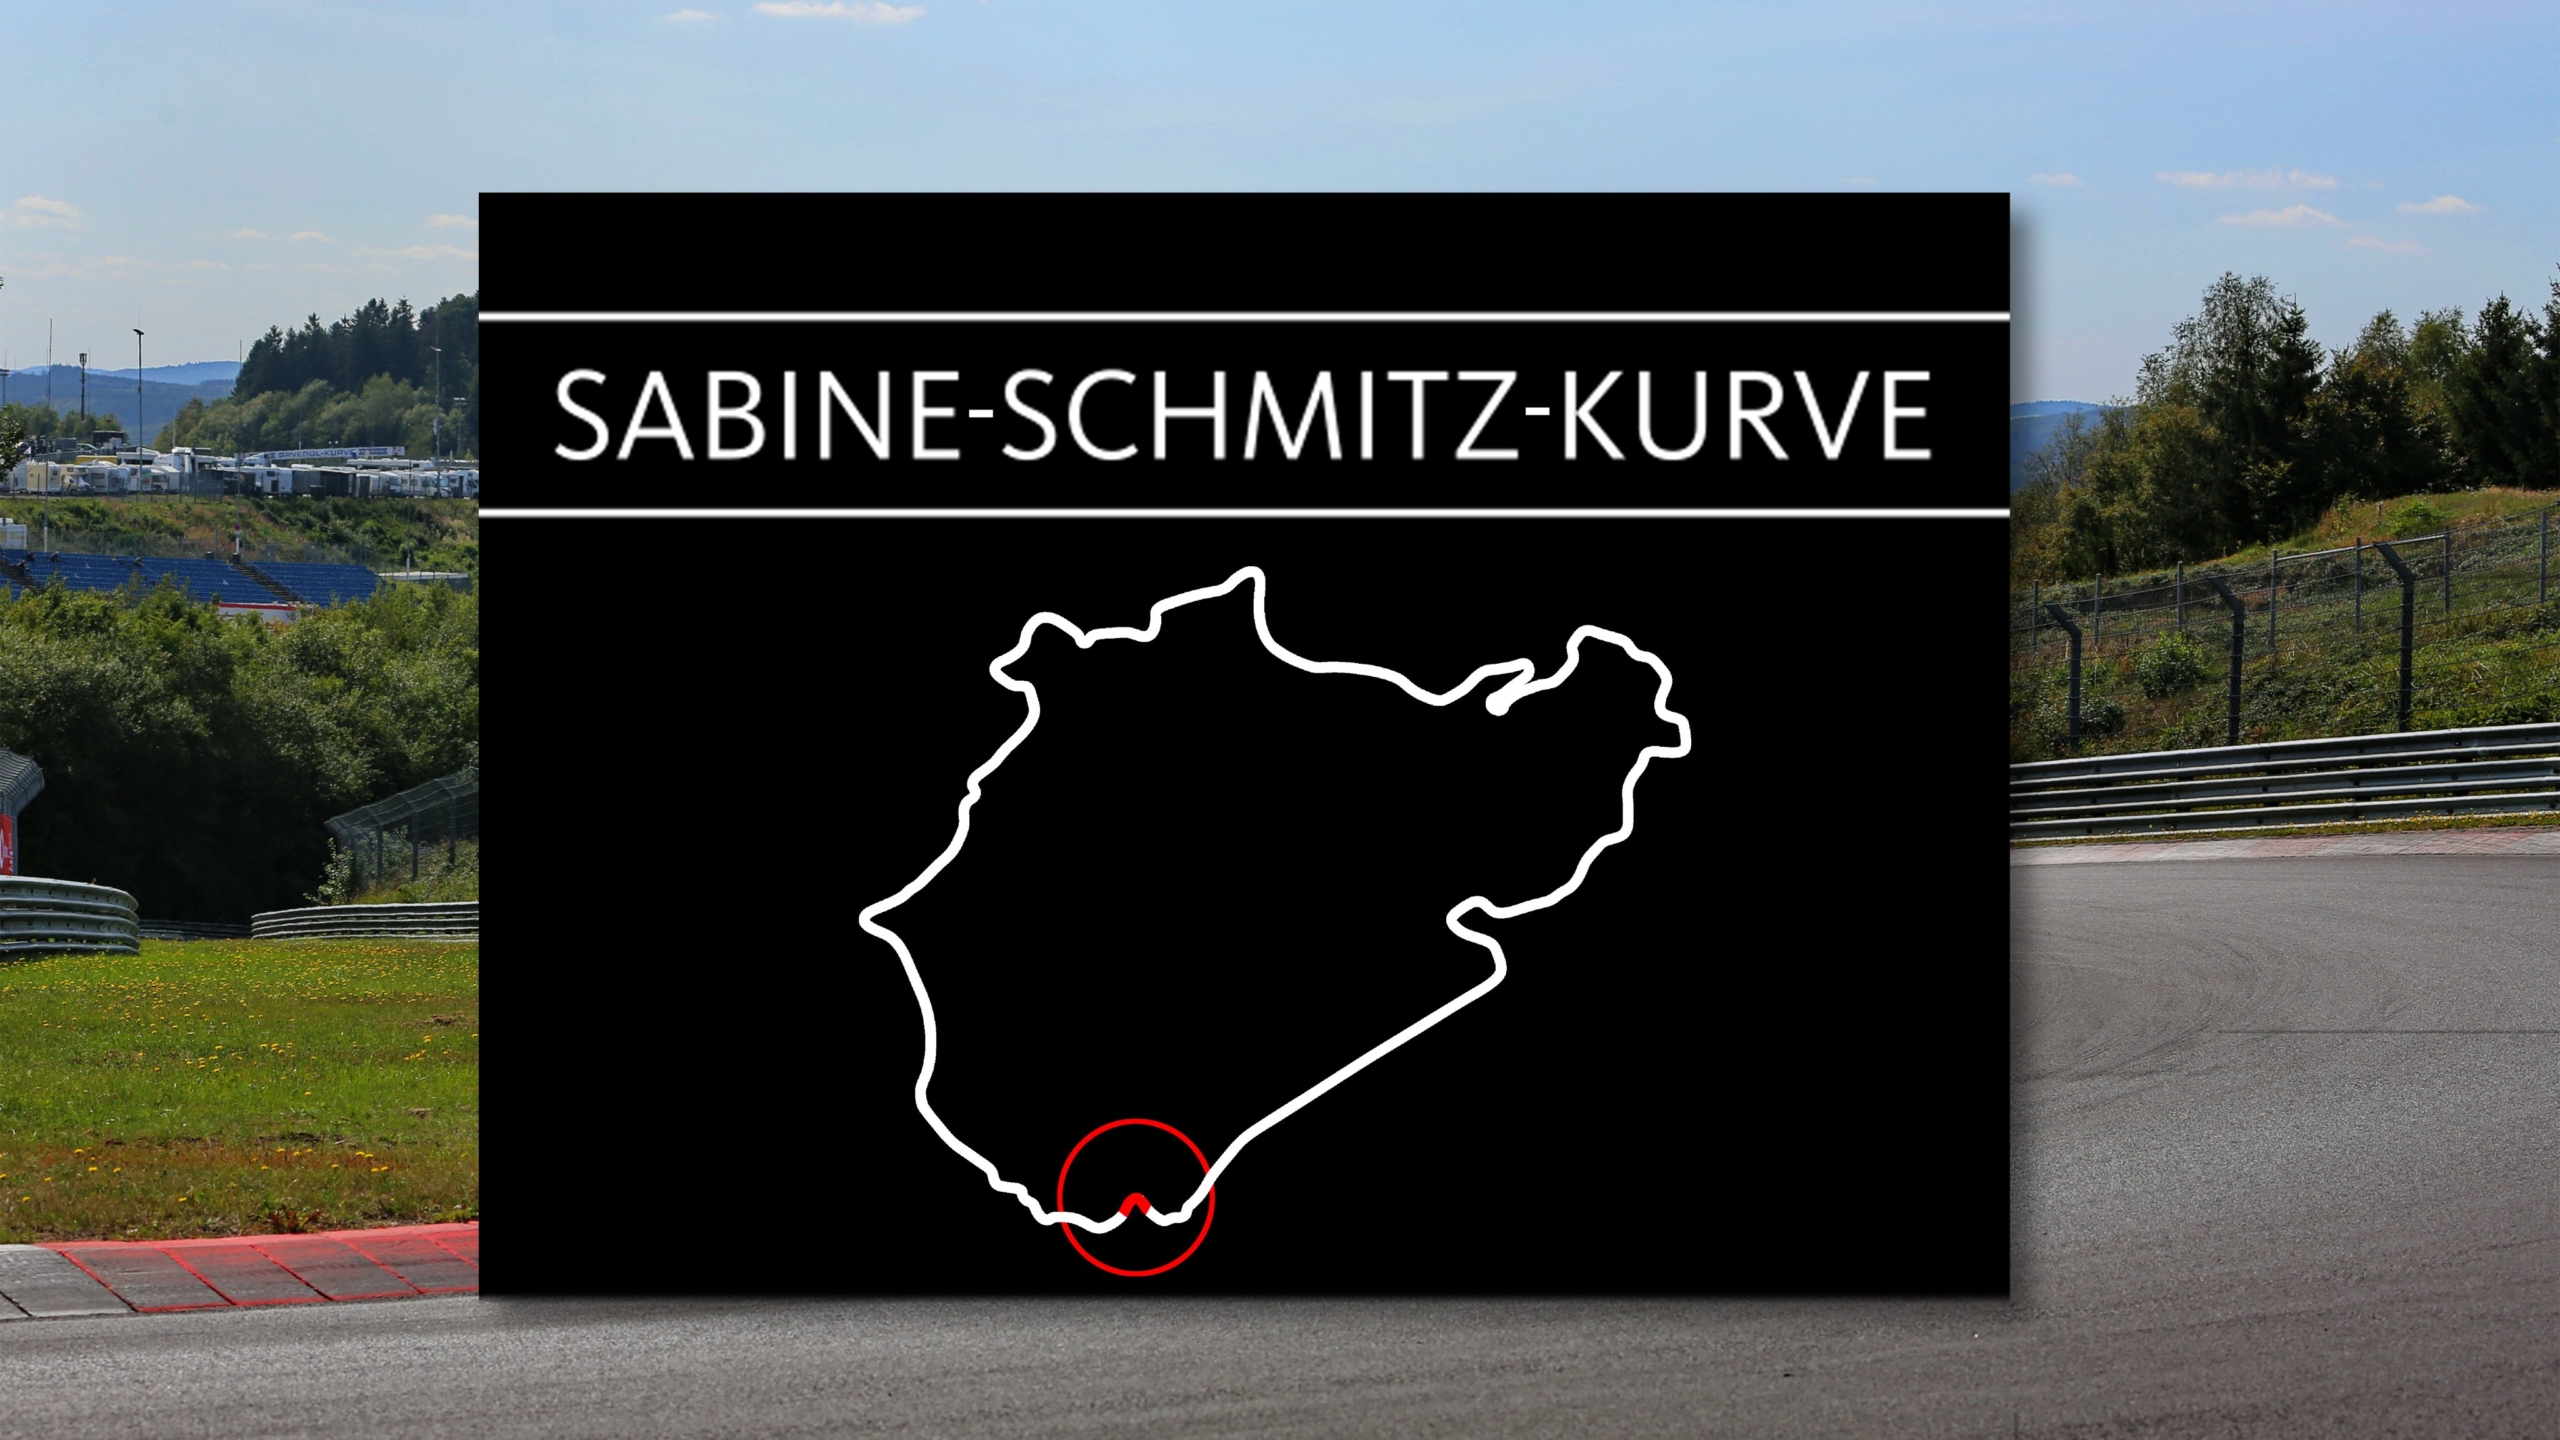 Nurburgring to name a corner after Sabine Schmitz